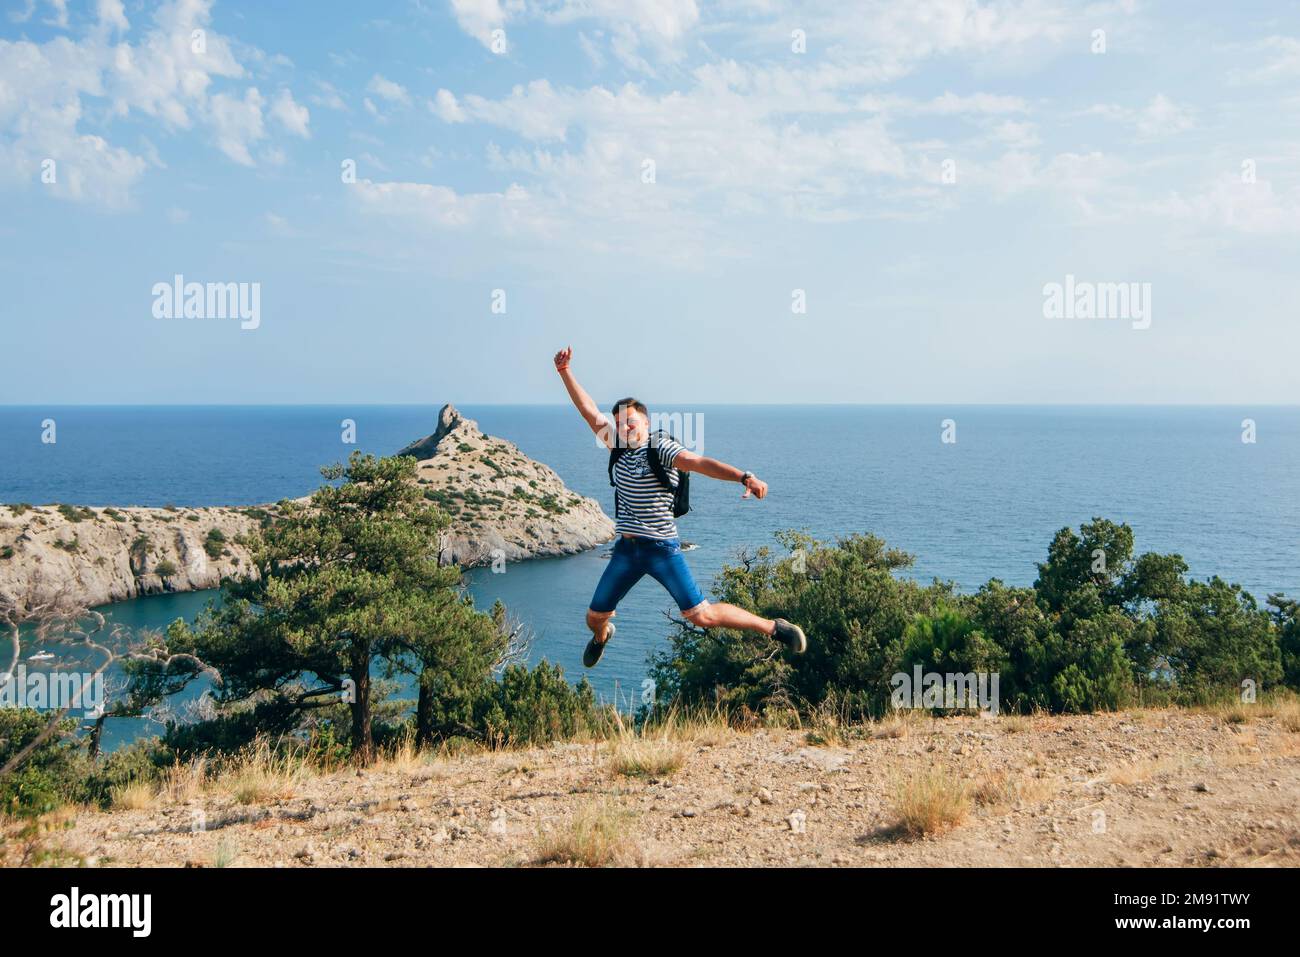 le voyageur masculin saute joyeusement et heureusement dans la nature pendant les vacances d'été dans les montagnes au bord de la mer, symbolisant la liberté Banque D'Images